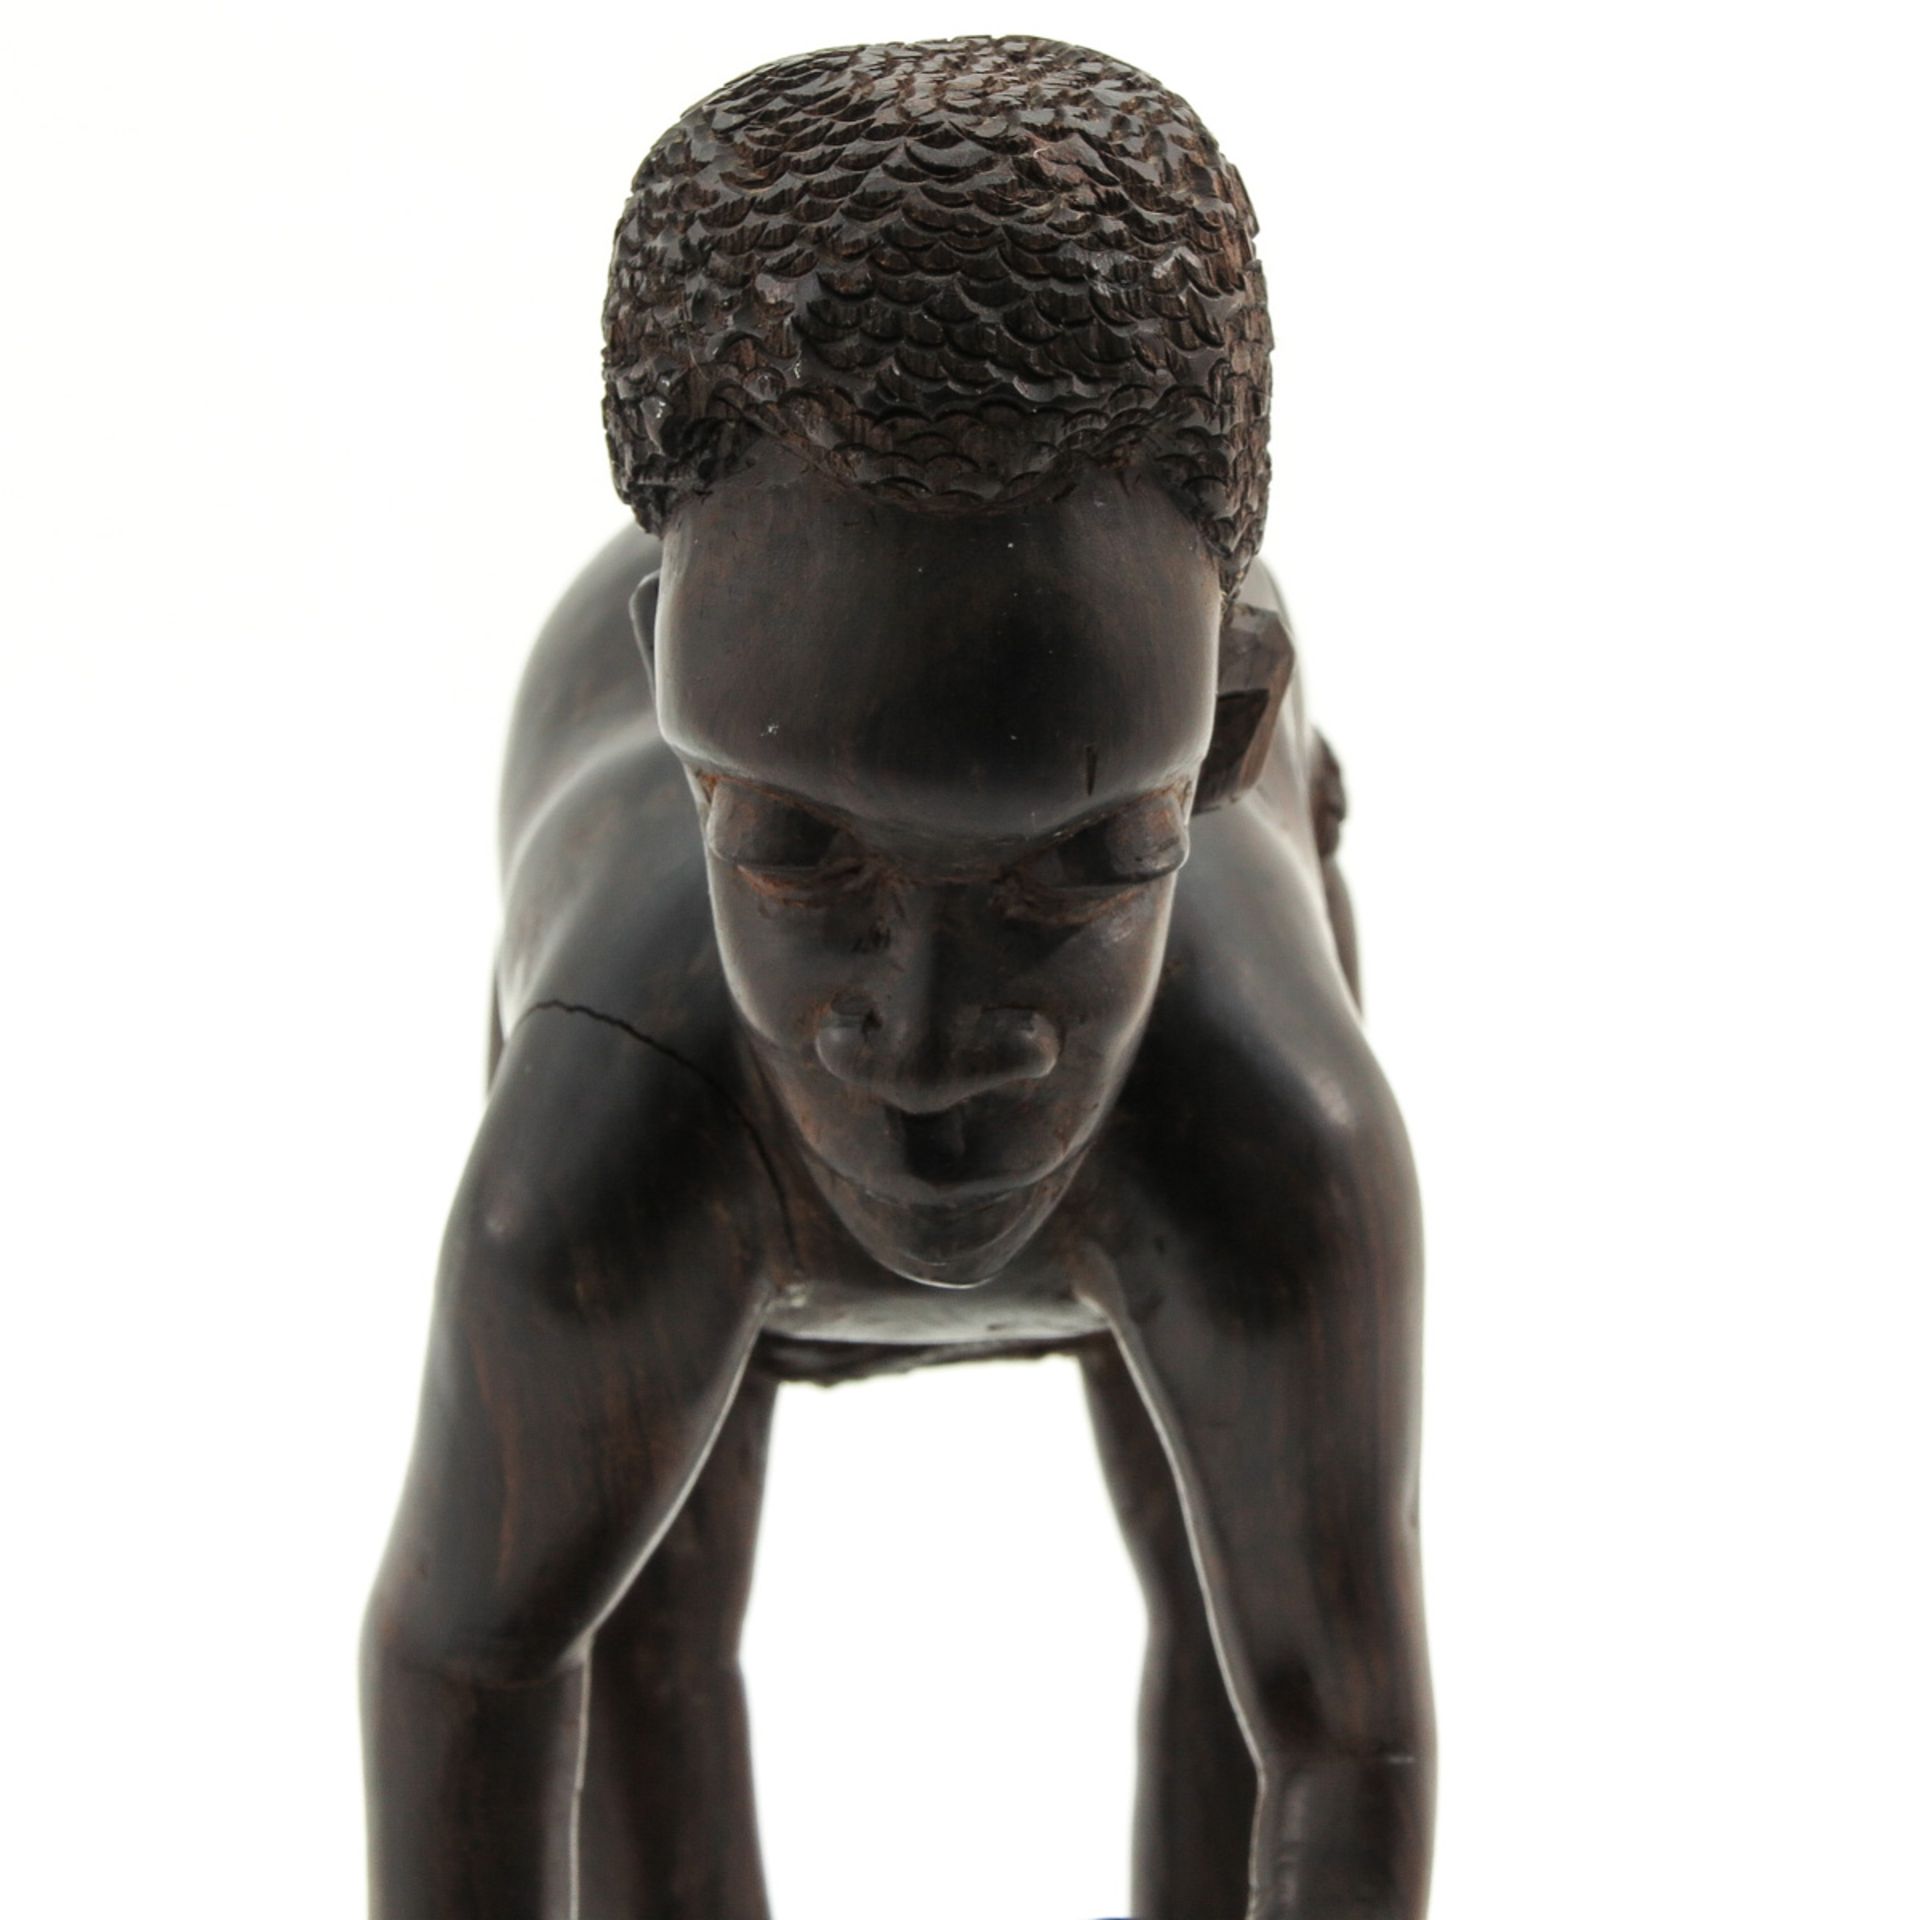 An African Sculpture - Bild 7 aus 10